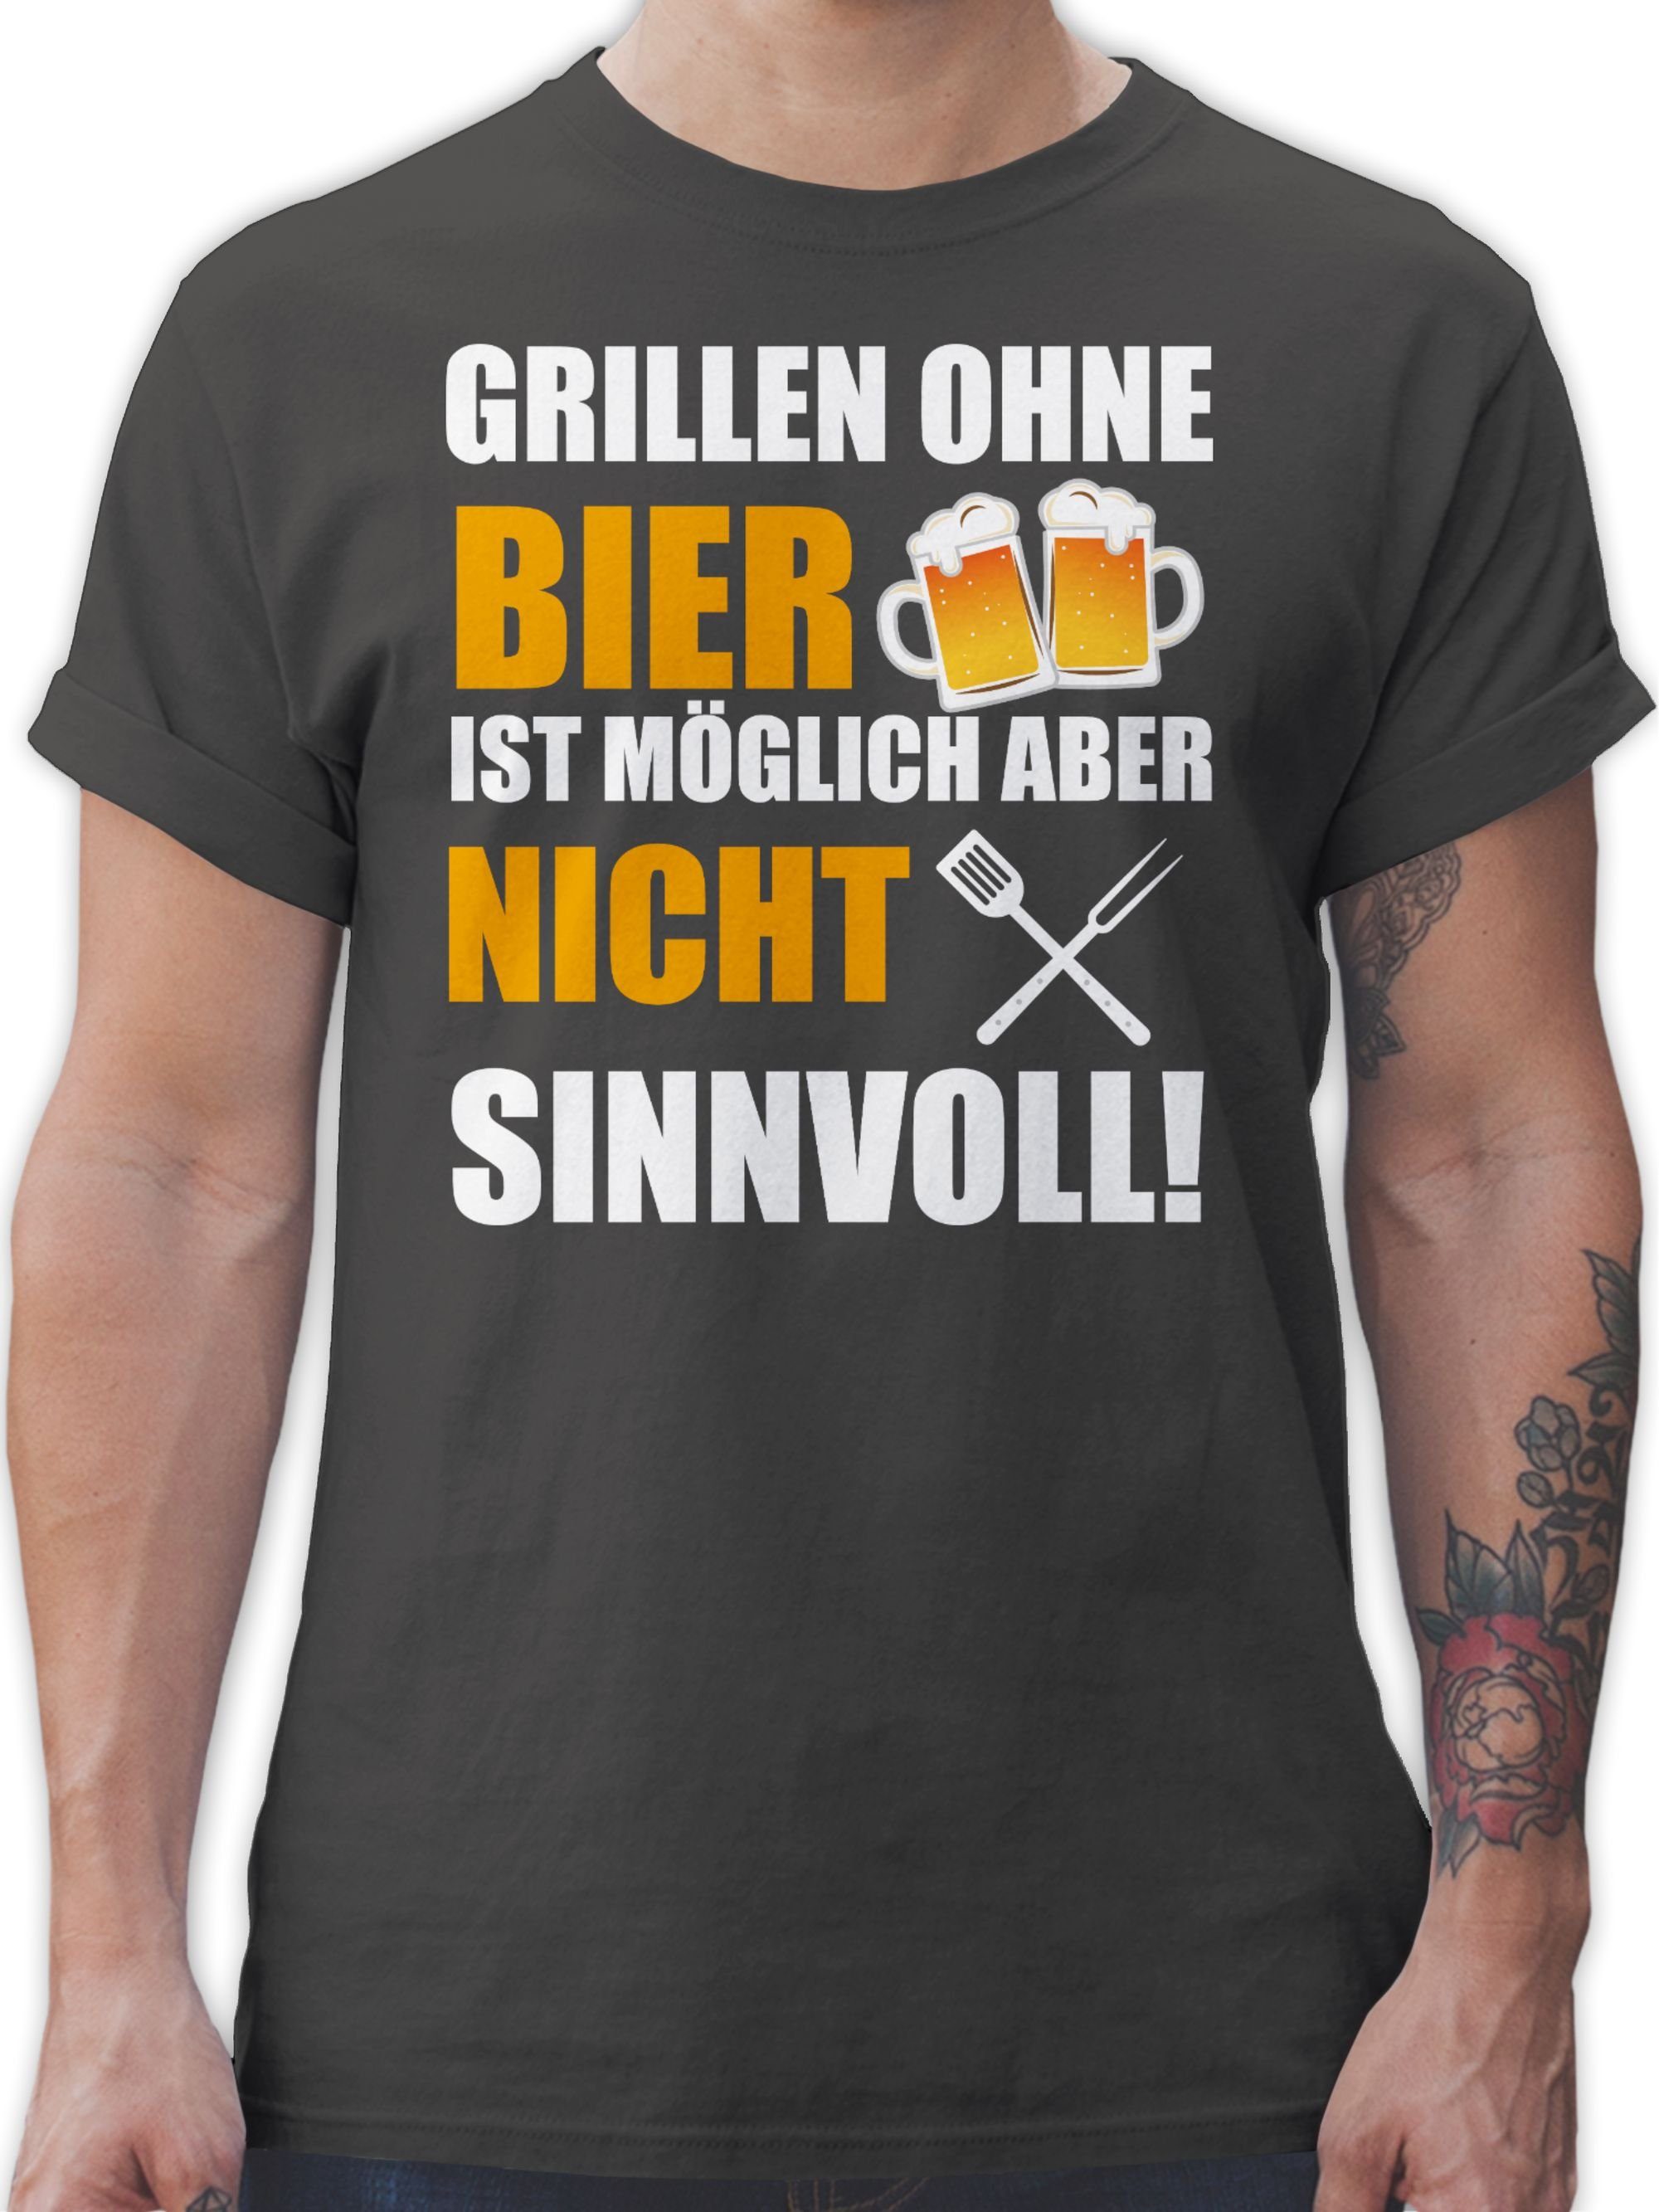 03 Dunkelgrau Bier ist Grillen ohne Grillen sinnvoll Geschenk nicht & Grillzubehör weiß Shirtracer T-Shirt